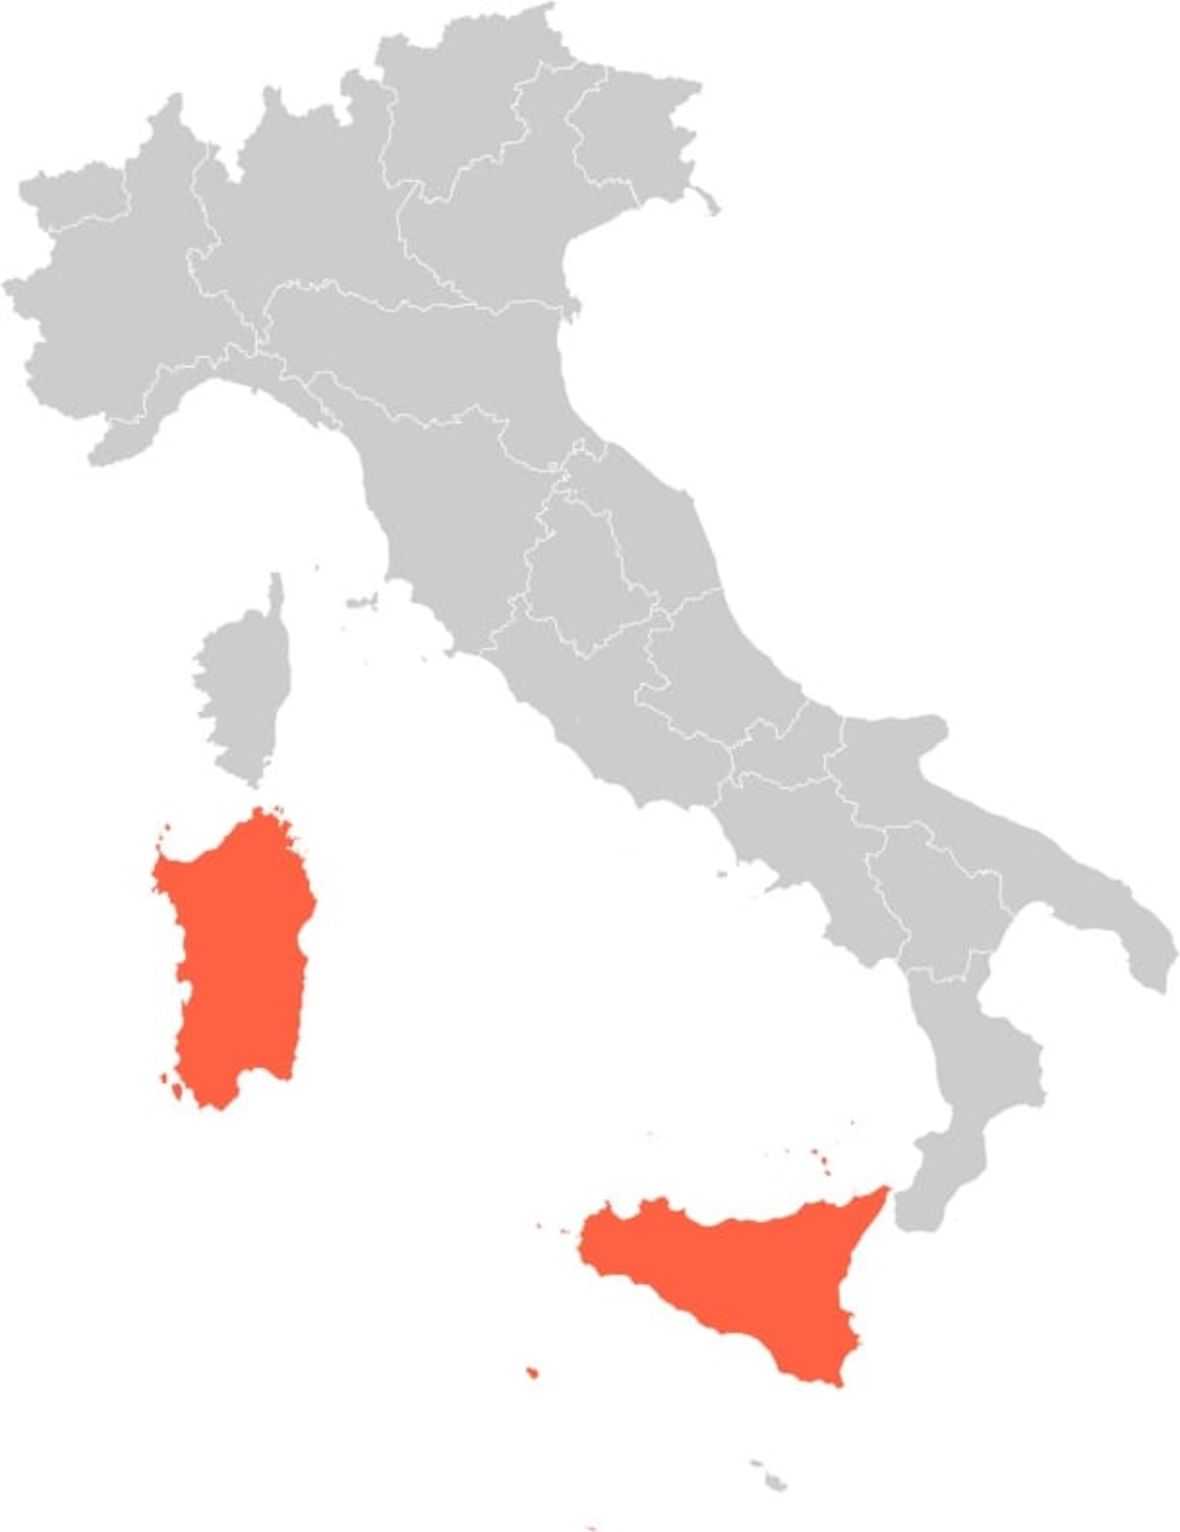 Sardina & Sicily Islands Map